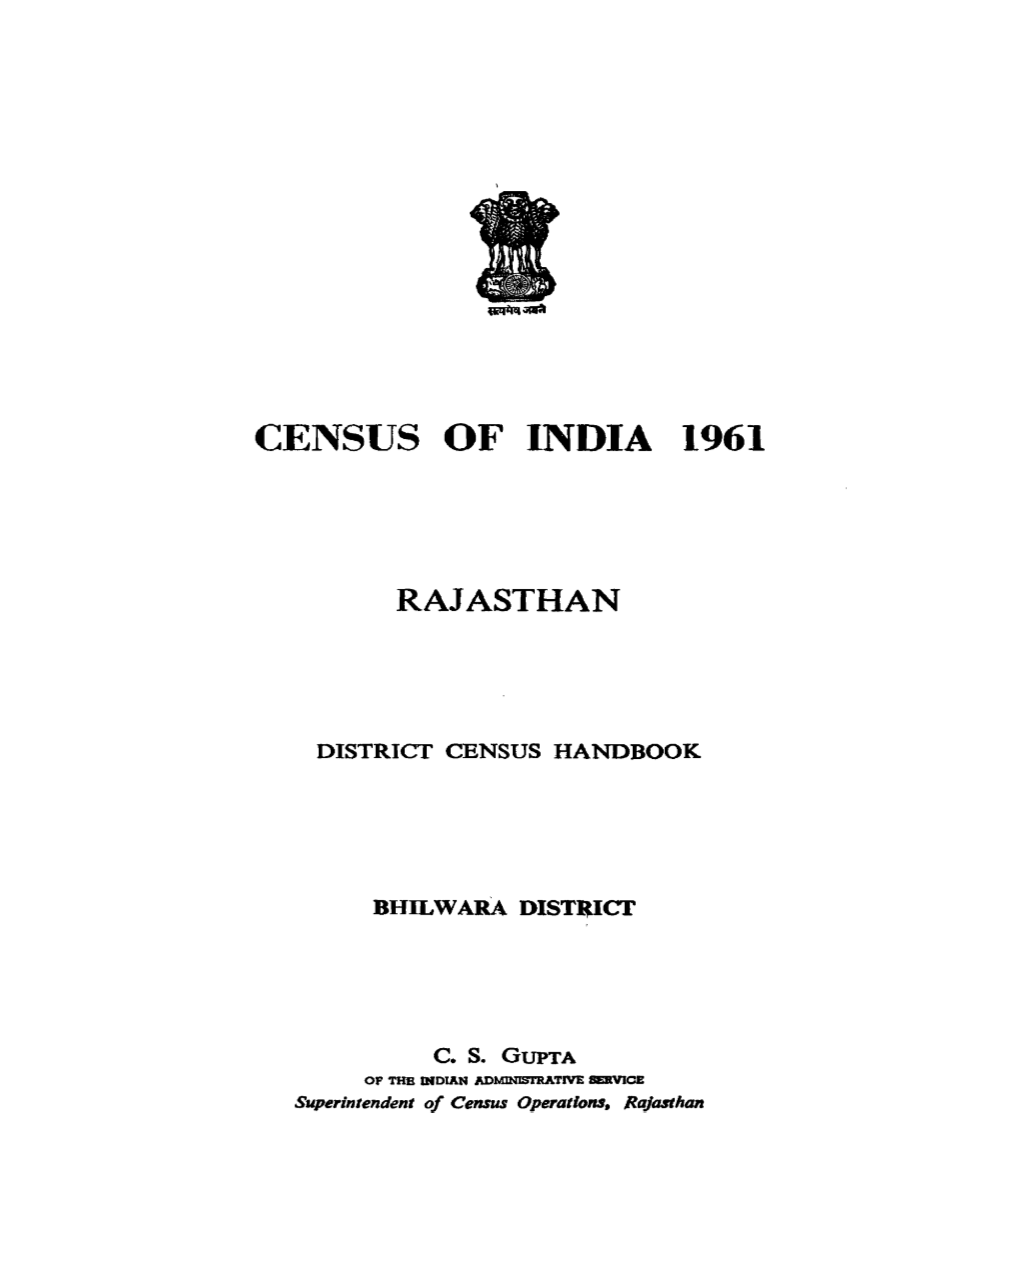 District Census Handbook, Bhilwara, Rajasthan